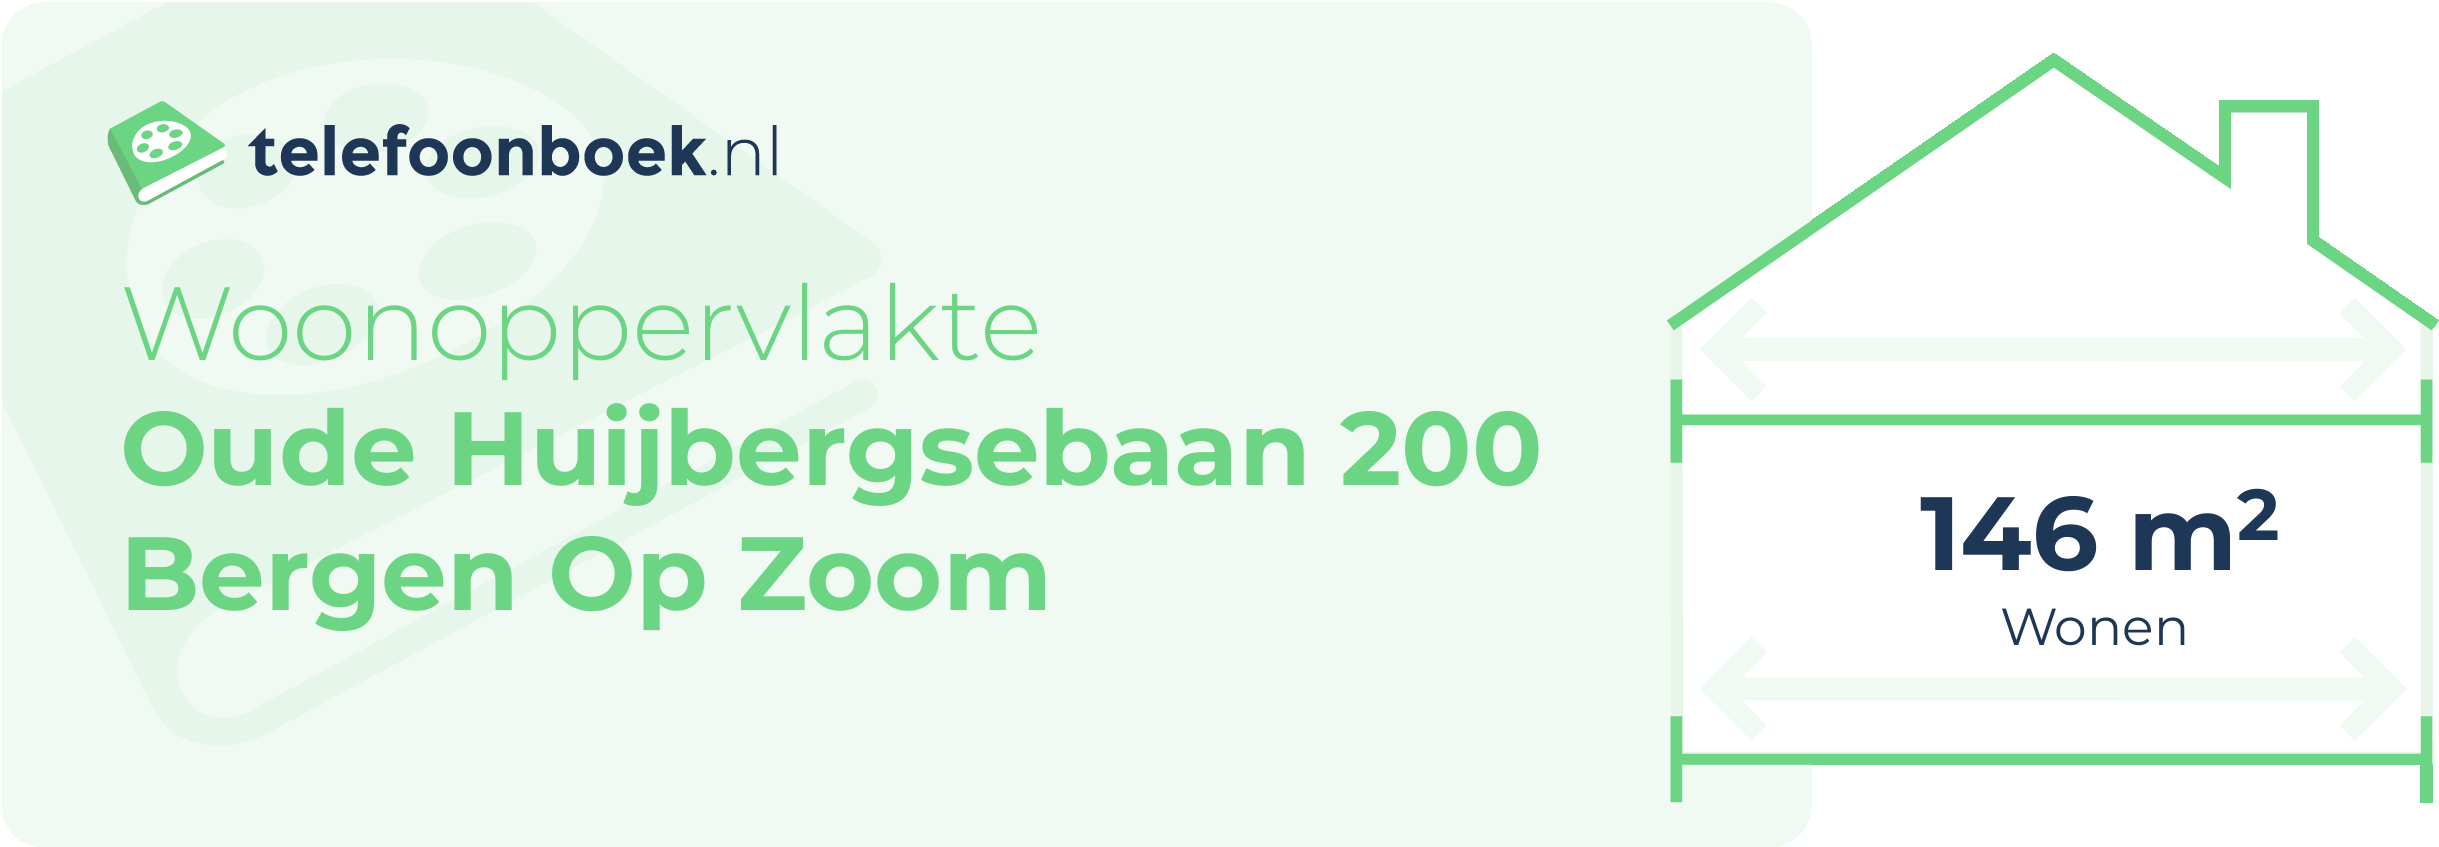 Woonoppervlakte Oude Huijbergsebaan 200 Bergen Op Zoom